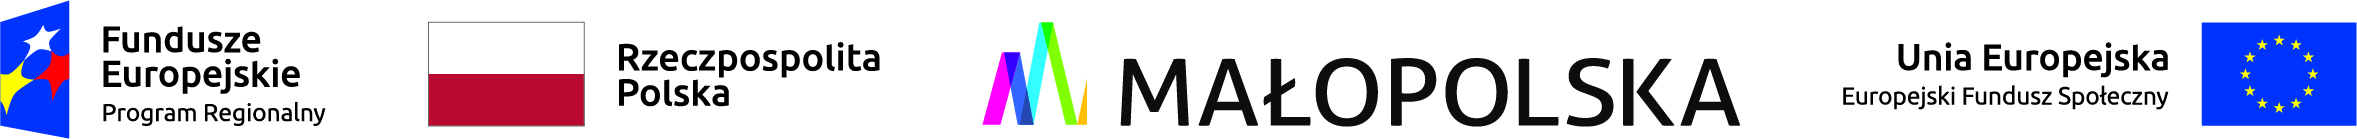 Zestawienie logotypów zawierające od lewej: znak Funduszy Europejskich z podpisem Program Regionalny. Polski - biało czerwona flaga z podpisem Rzeczpospolita Polska, oraz znak województwa małopolskiego z podpisem Małopolska kolejno flaga Unii Europejskiej z podpisem Unia Europejska Europejski Fundusz Społeczny